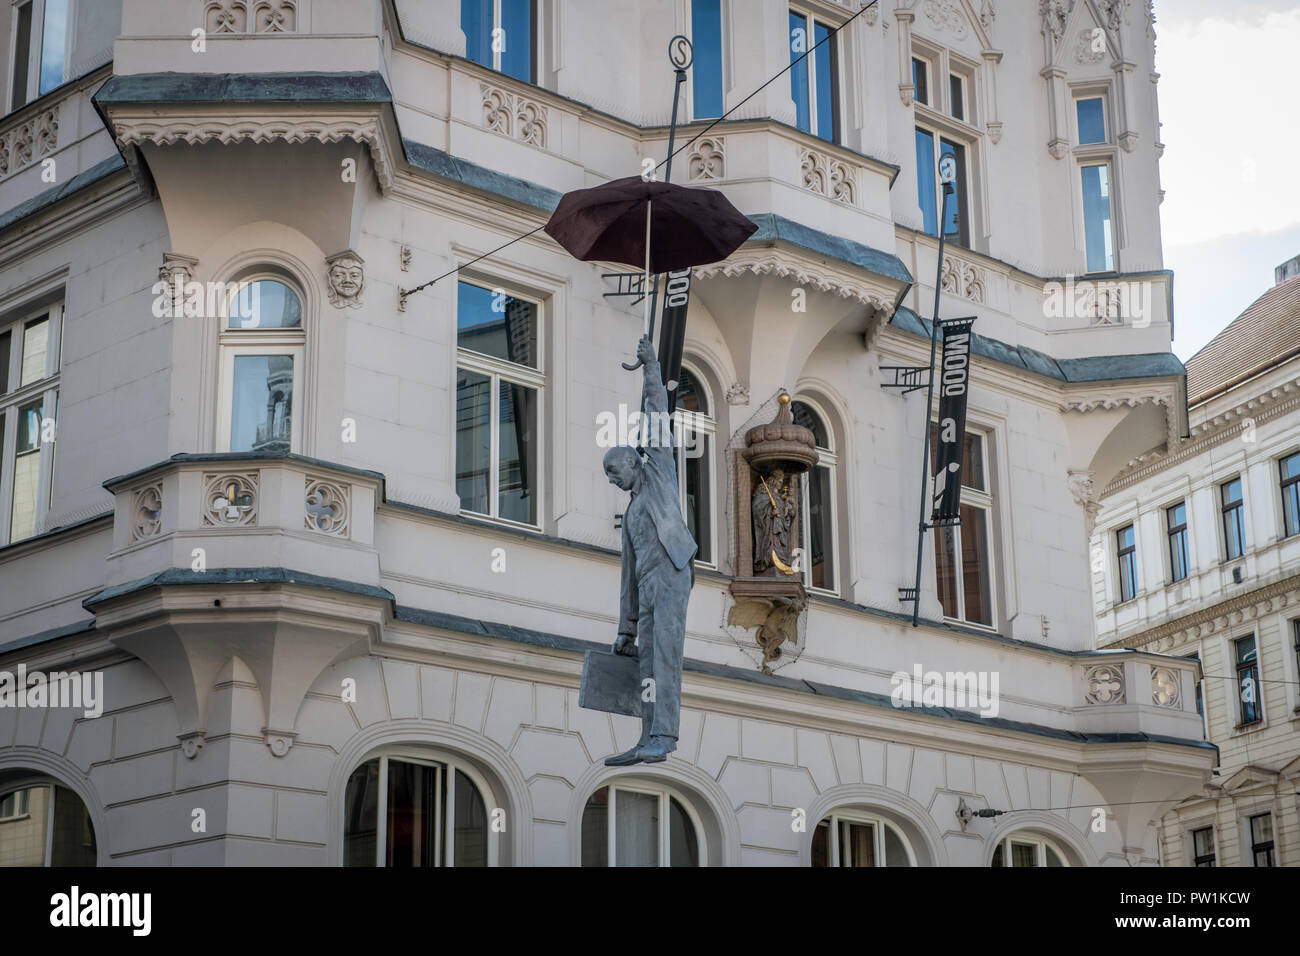 Skulptur von einem Mann hängen von einem Regenschirm auf einem Telefon mit Draht in Prag - Tschechische Republik Stockfoto